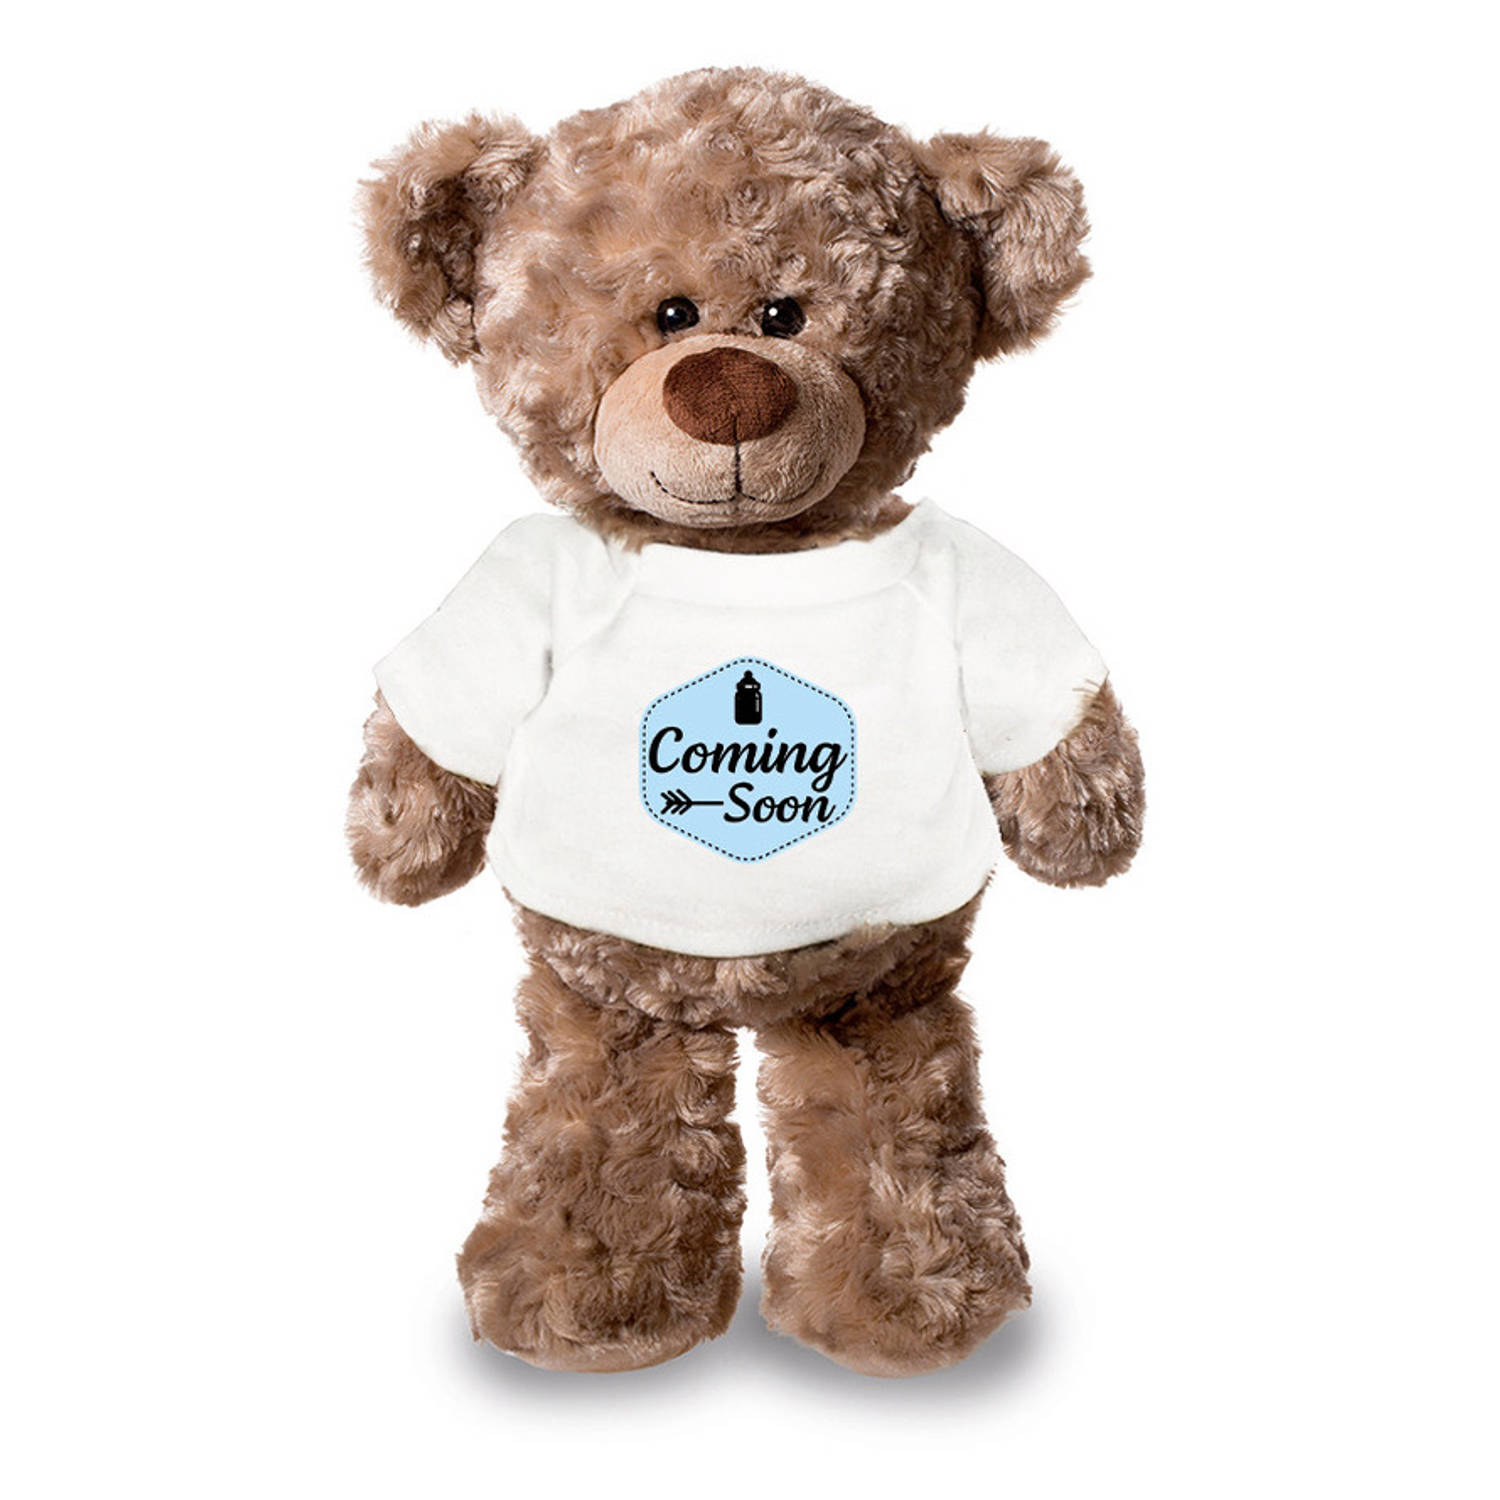 Coming soon aankondiging jongen pluche teddybeer knuffel 24 cm Knuffelberen